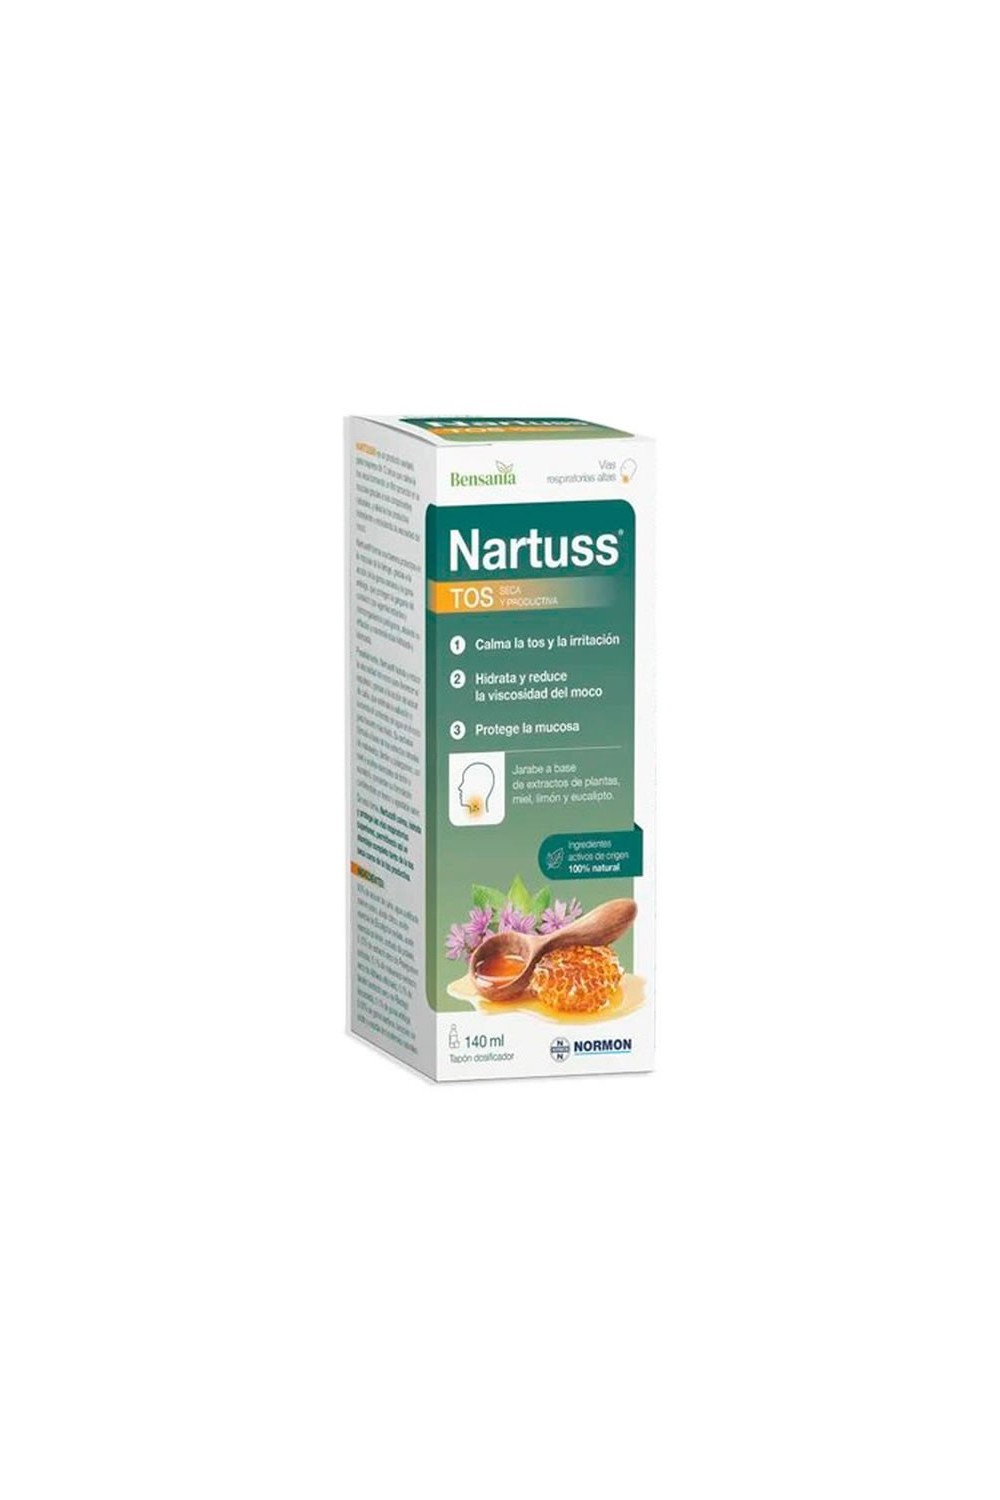 NORMON - Bensania Nartuss Dry Cough 140ml